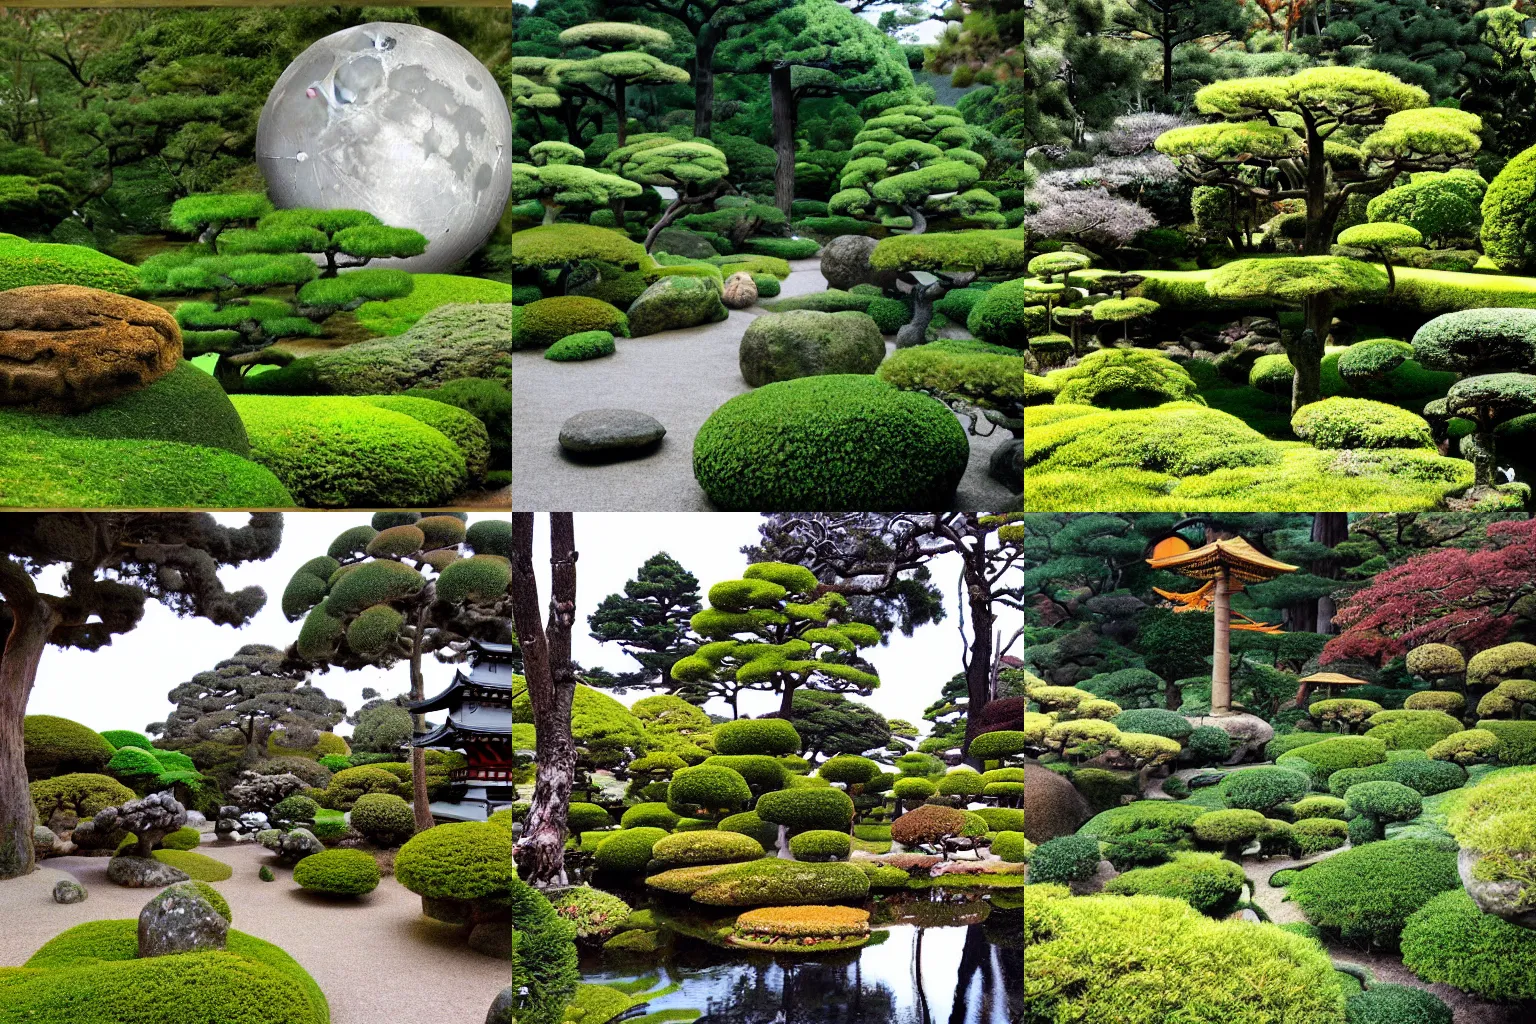 Prompt: japanese tea garden on the moon